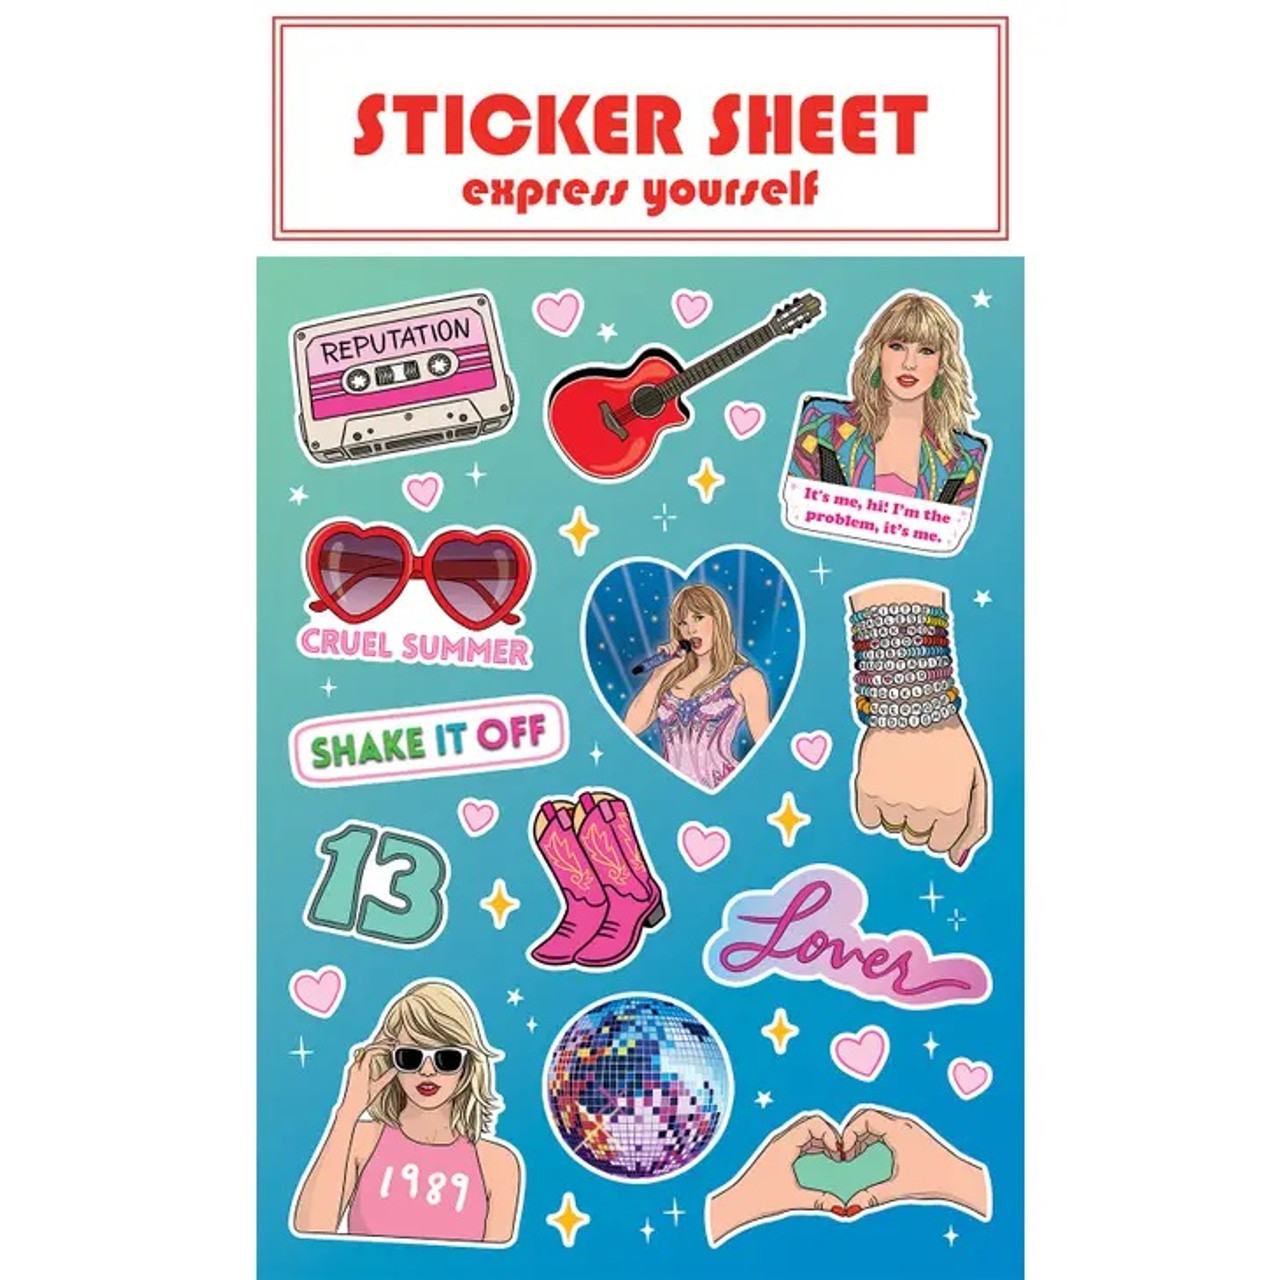 Swiftie Stickers - Taylor Swift Sticker Sheet 